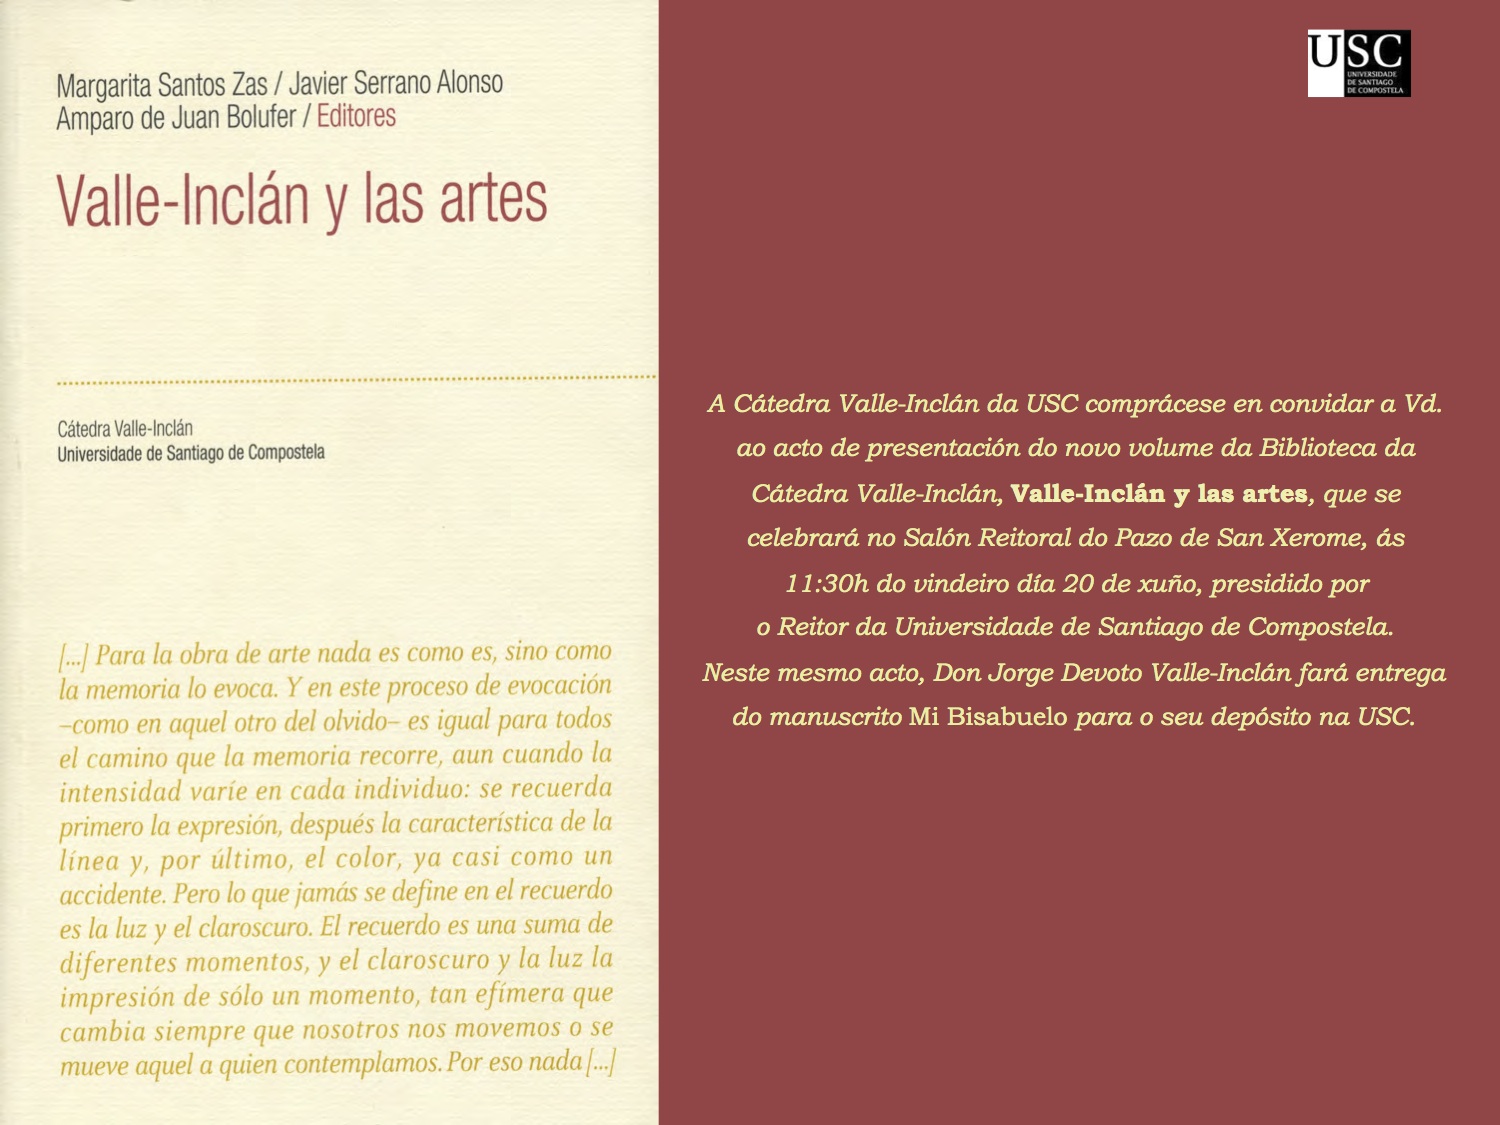 Valle Inclán y las artes, nuevo volumen de la Biblioteca de la Cátedra Vallé-Inclán